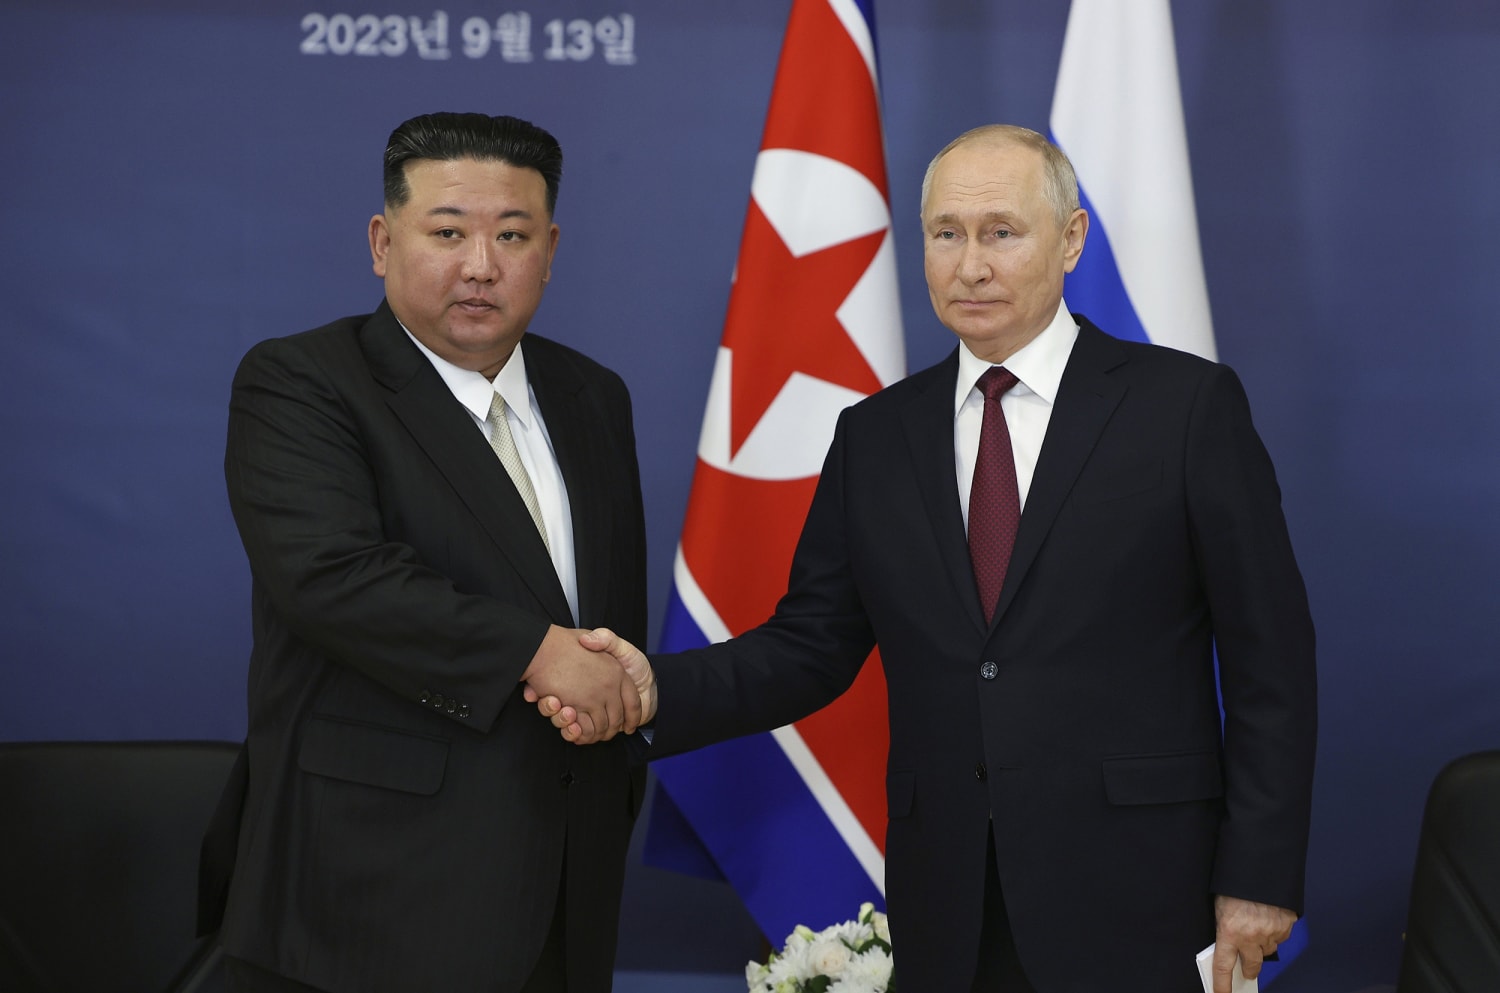 El veto ruso pone fin al trabajo del comité de Naciones Unidas que supervisa las sanciones nucleares a Corea del Norte